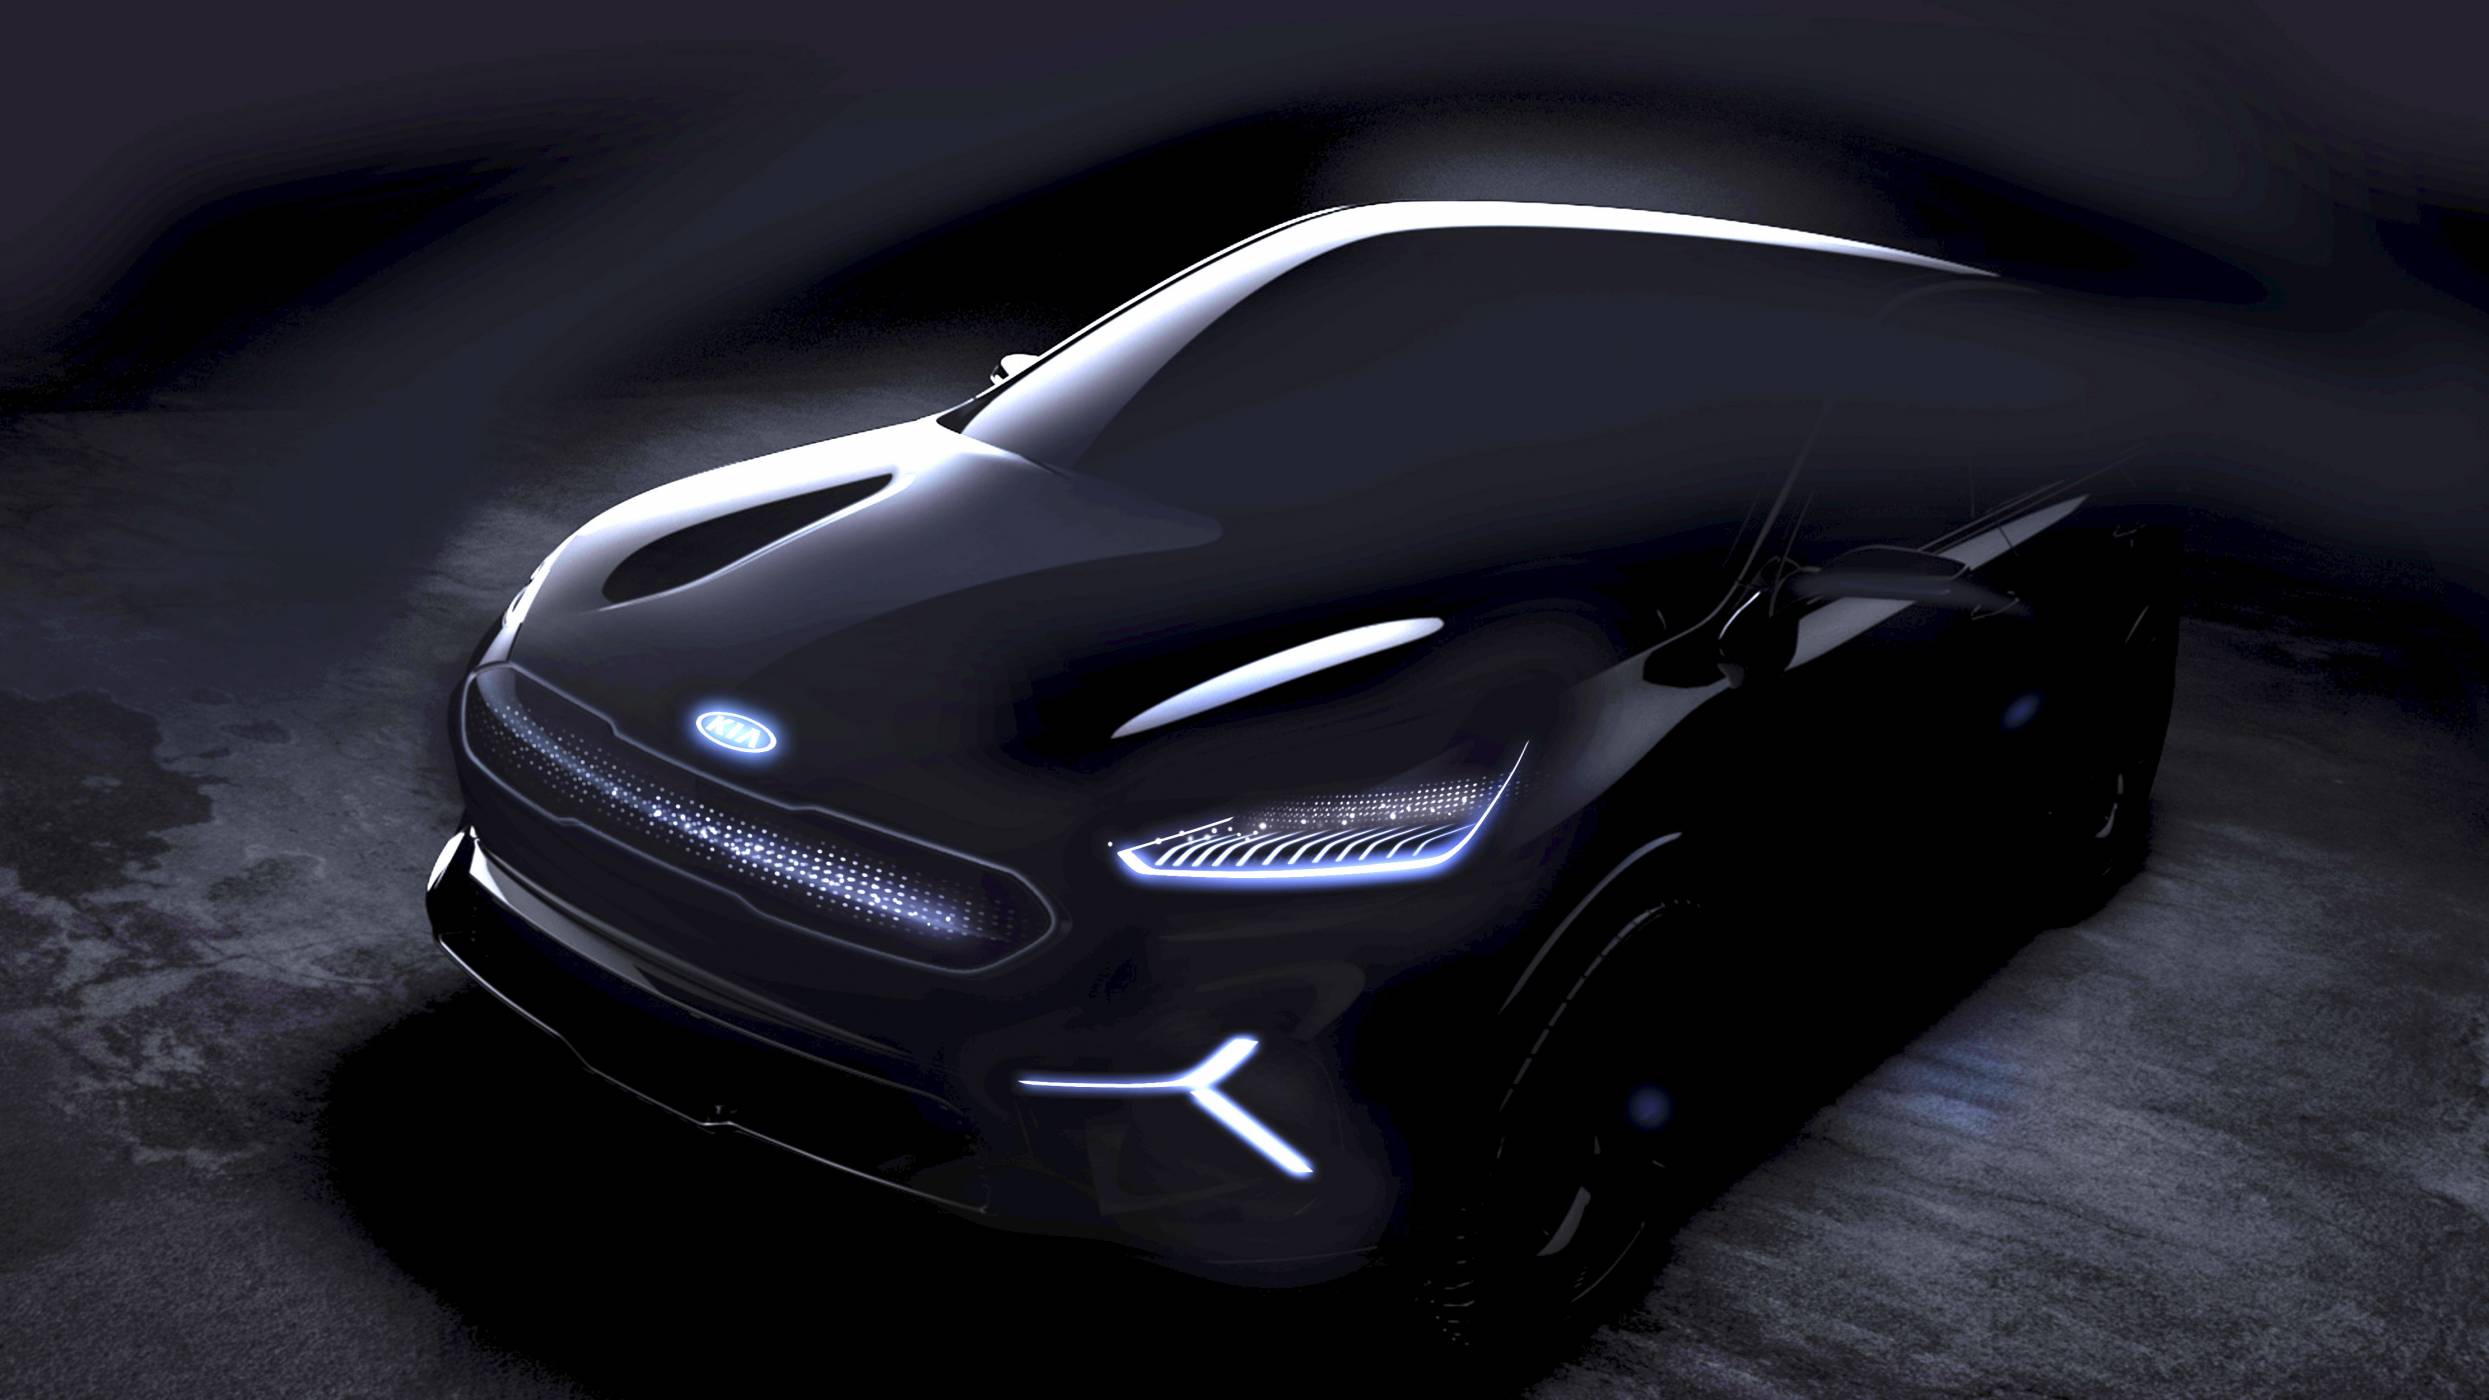 Niro EV е поглед в интересното електрическо бъдеще на Kia